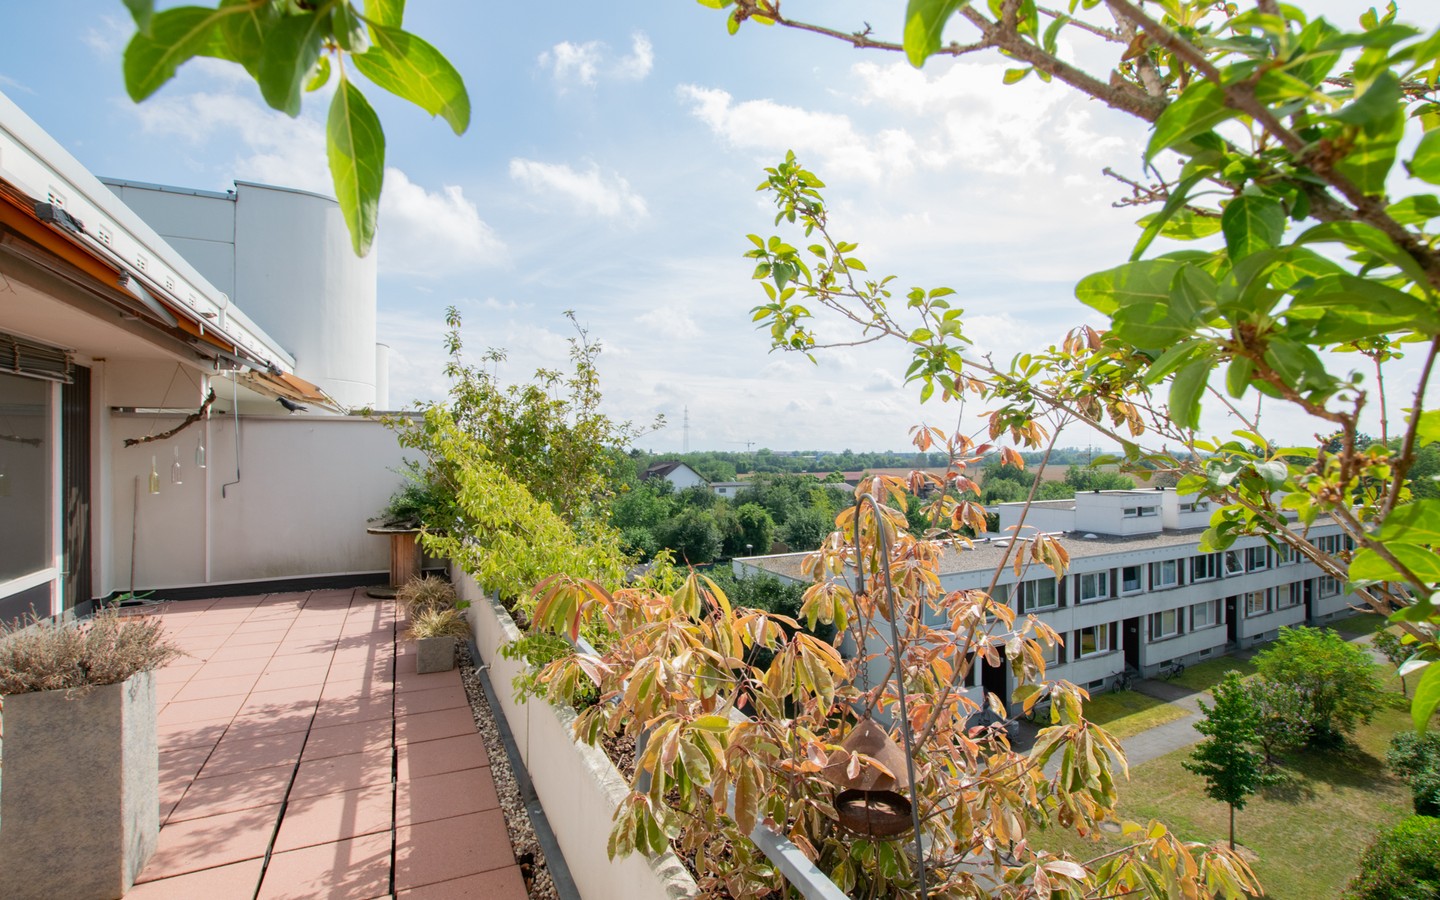 Terrasse - Schöne Aussichten: Renovierte Maisonettewohnung mit Terrasse und tollem Ausblick!